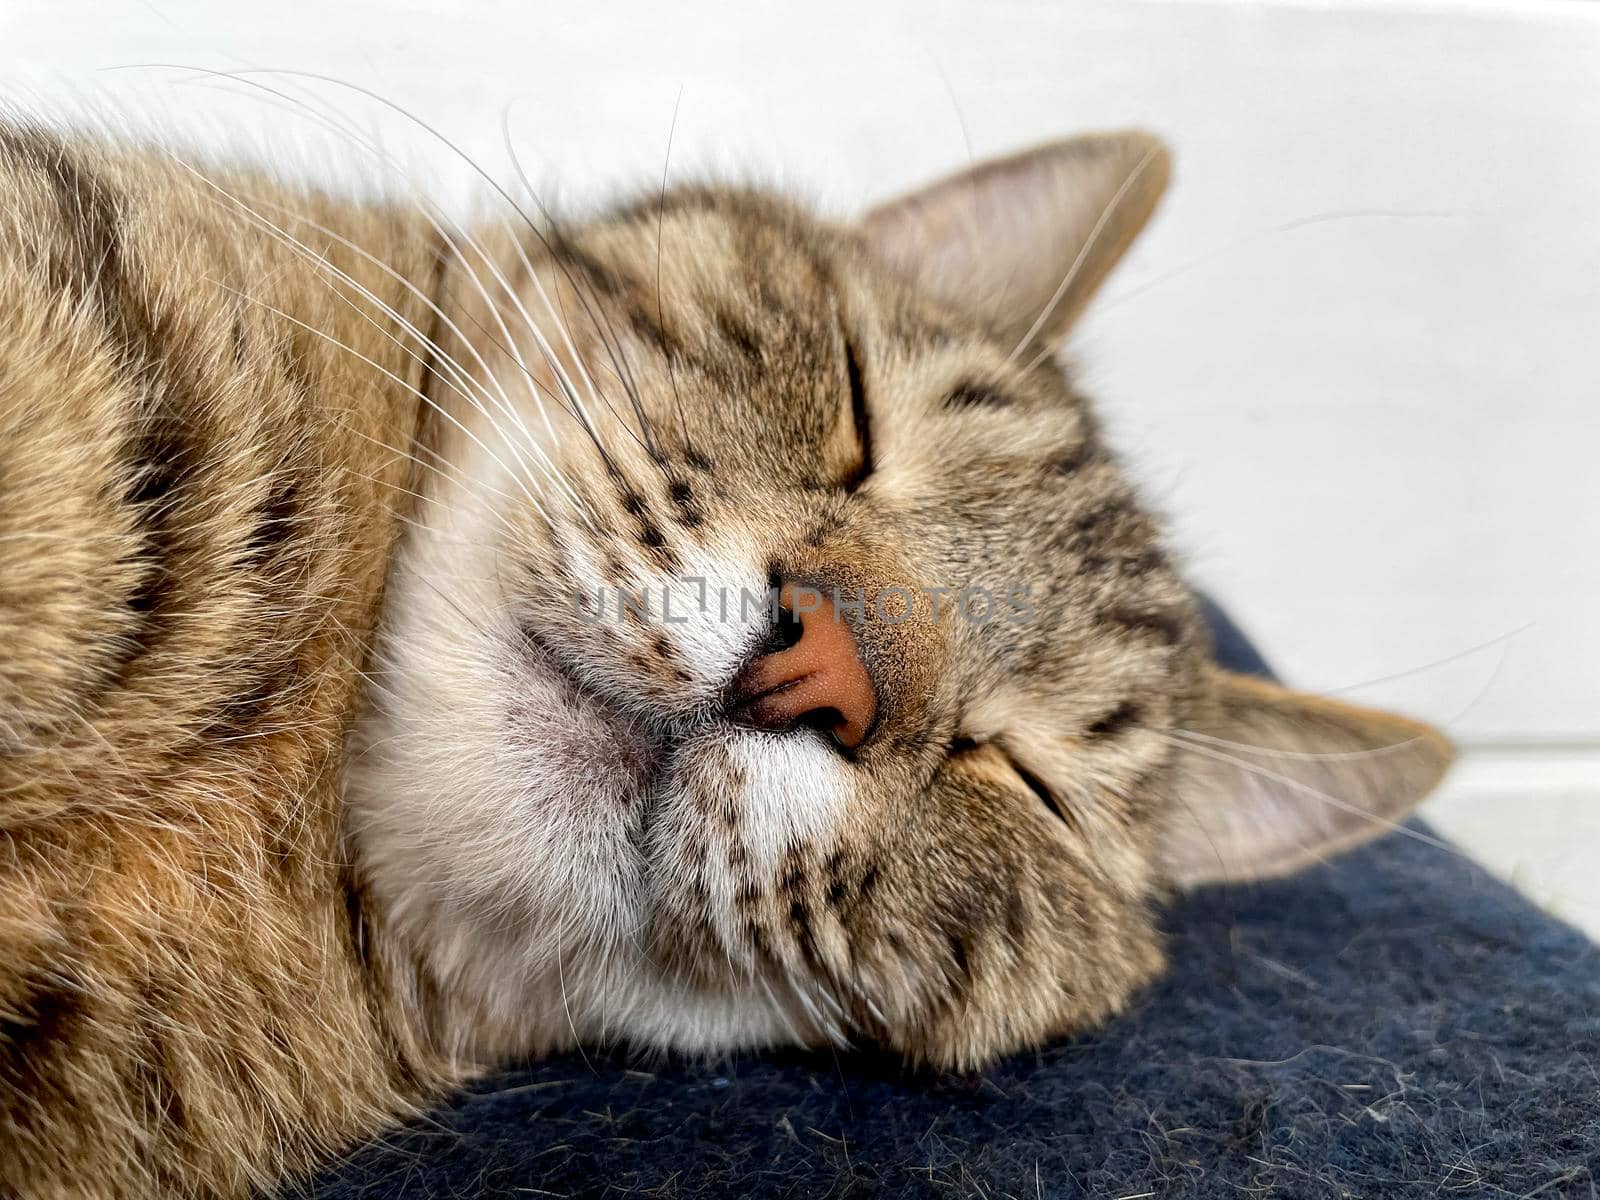 Sleeping gray cat on a woolen blanket